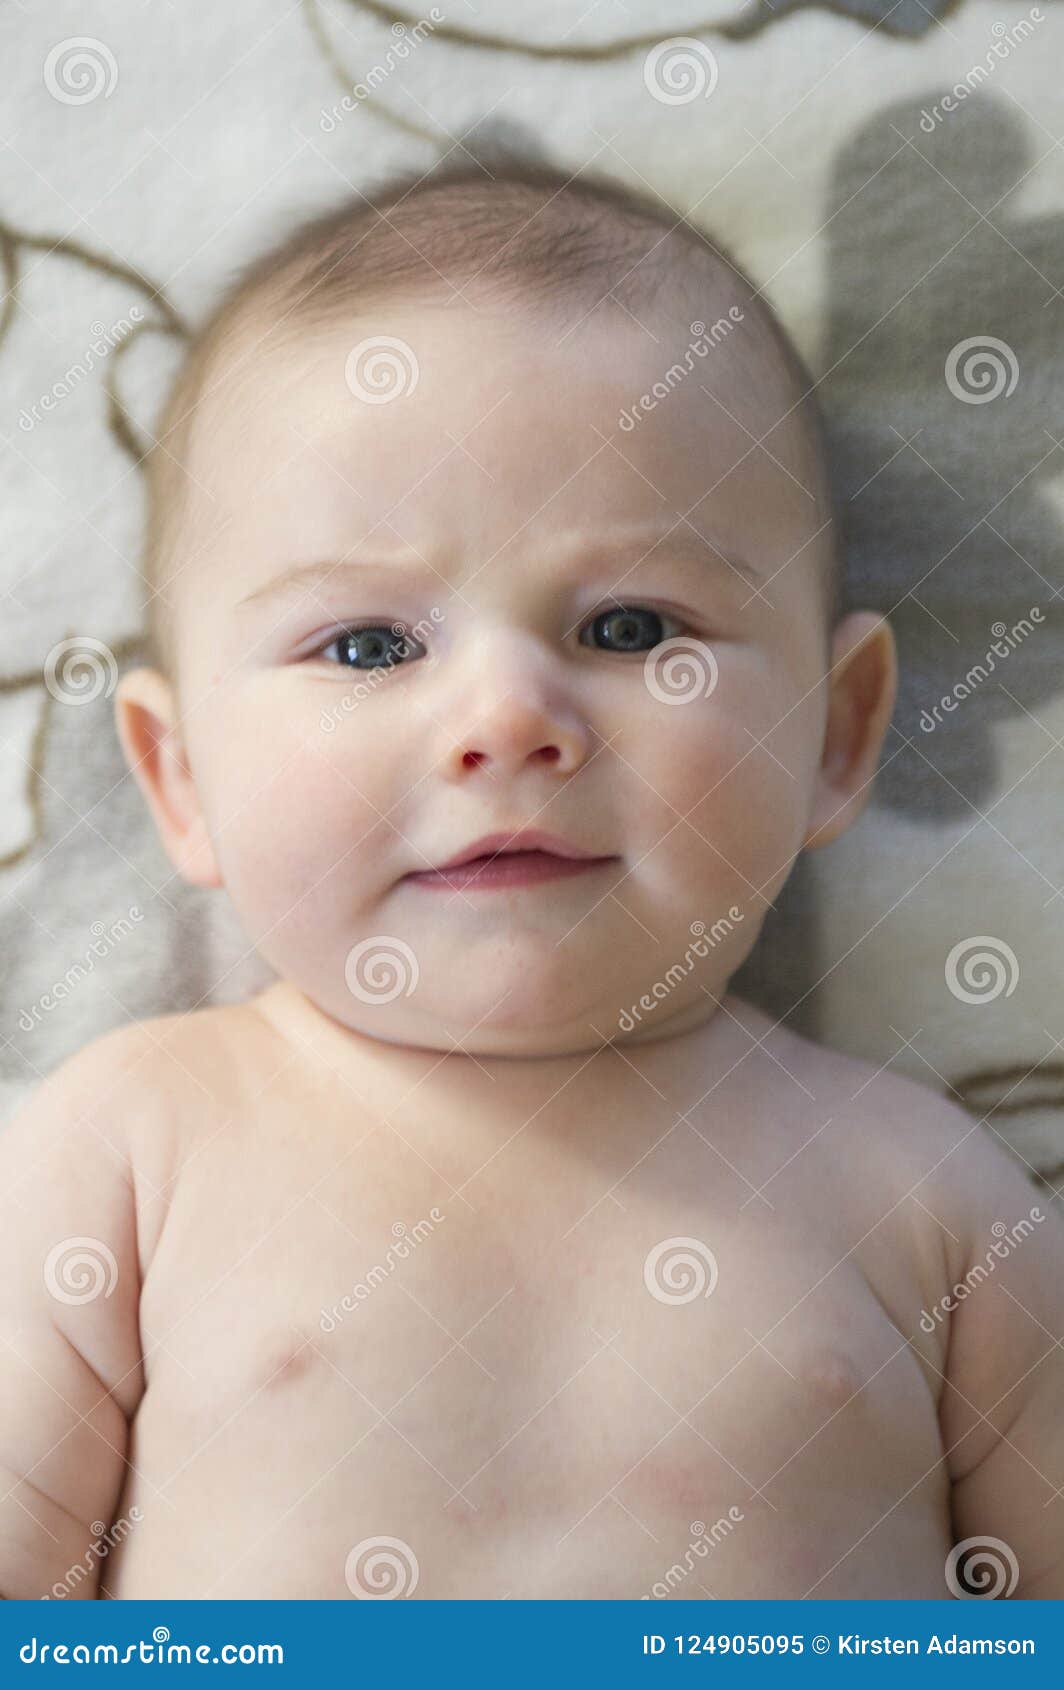 Cute Baby Blue Eyed Boy Stock Image Image Of Innocence